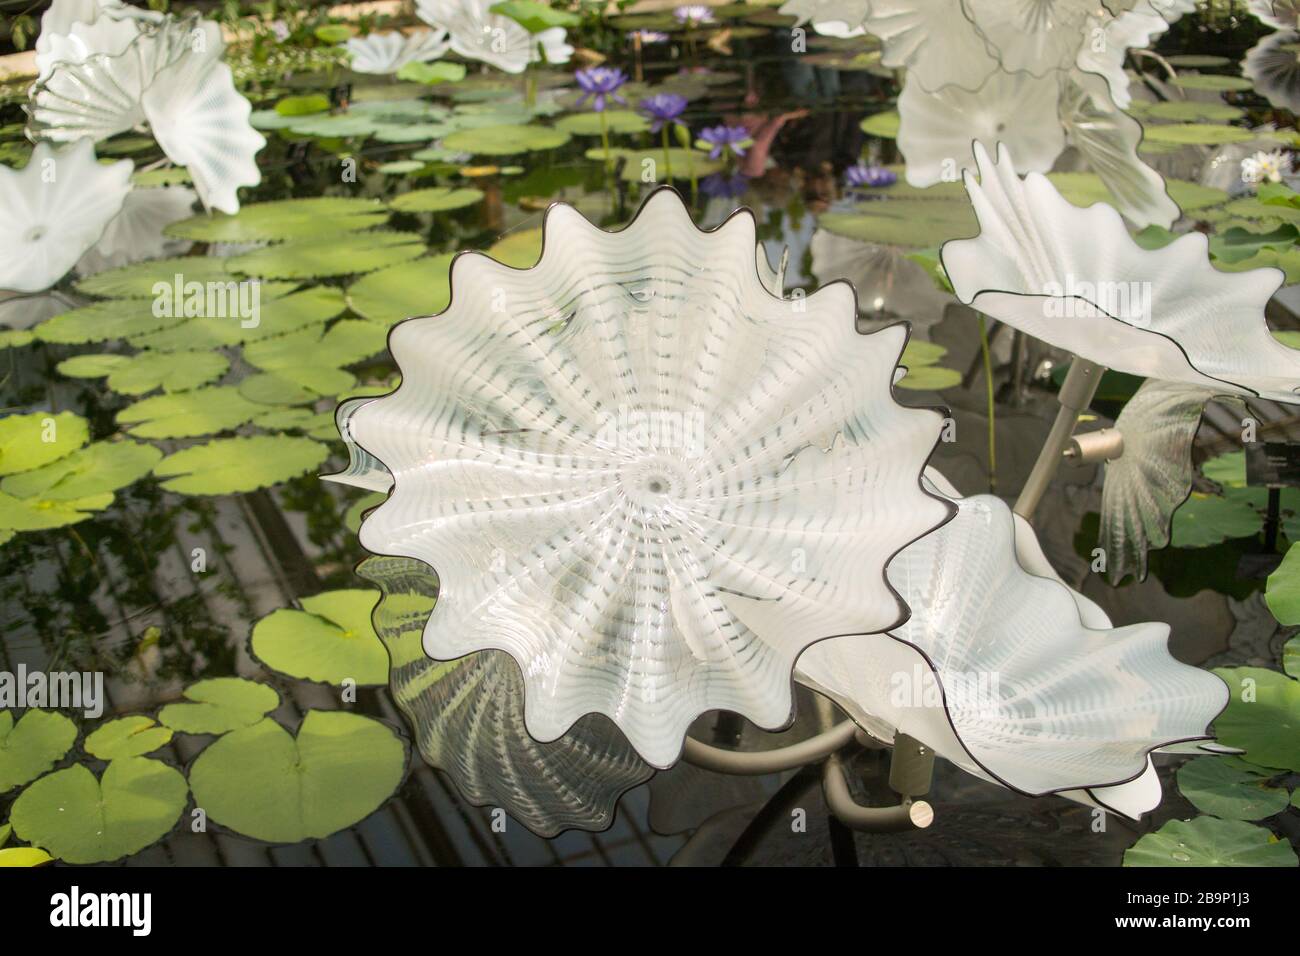 Étang Perse blanc éthéré : grande sculpture en verre soufflé de Dale Chihuly flottant sur un étang de nénuphars dans la serre de Kew Gardens, en Angleterre Banque D'Images